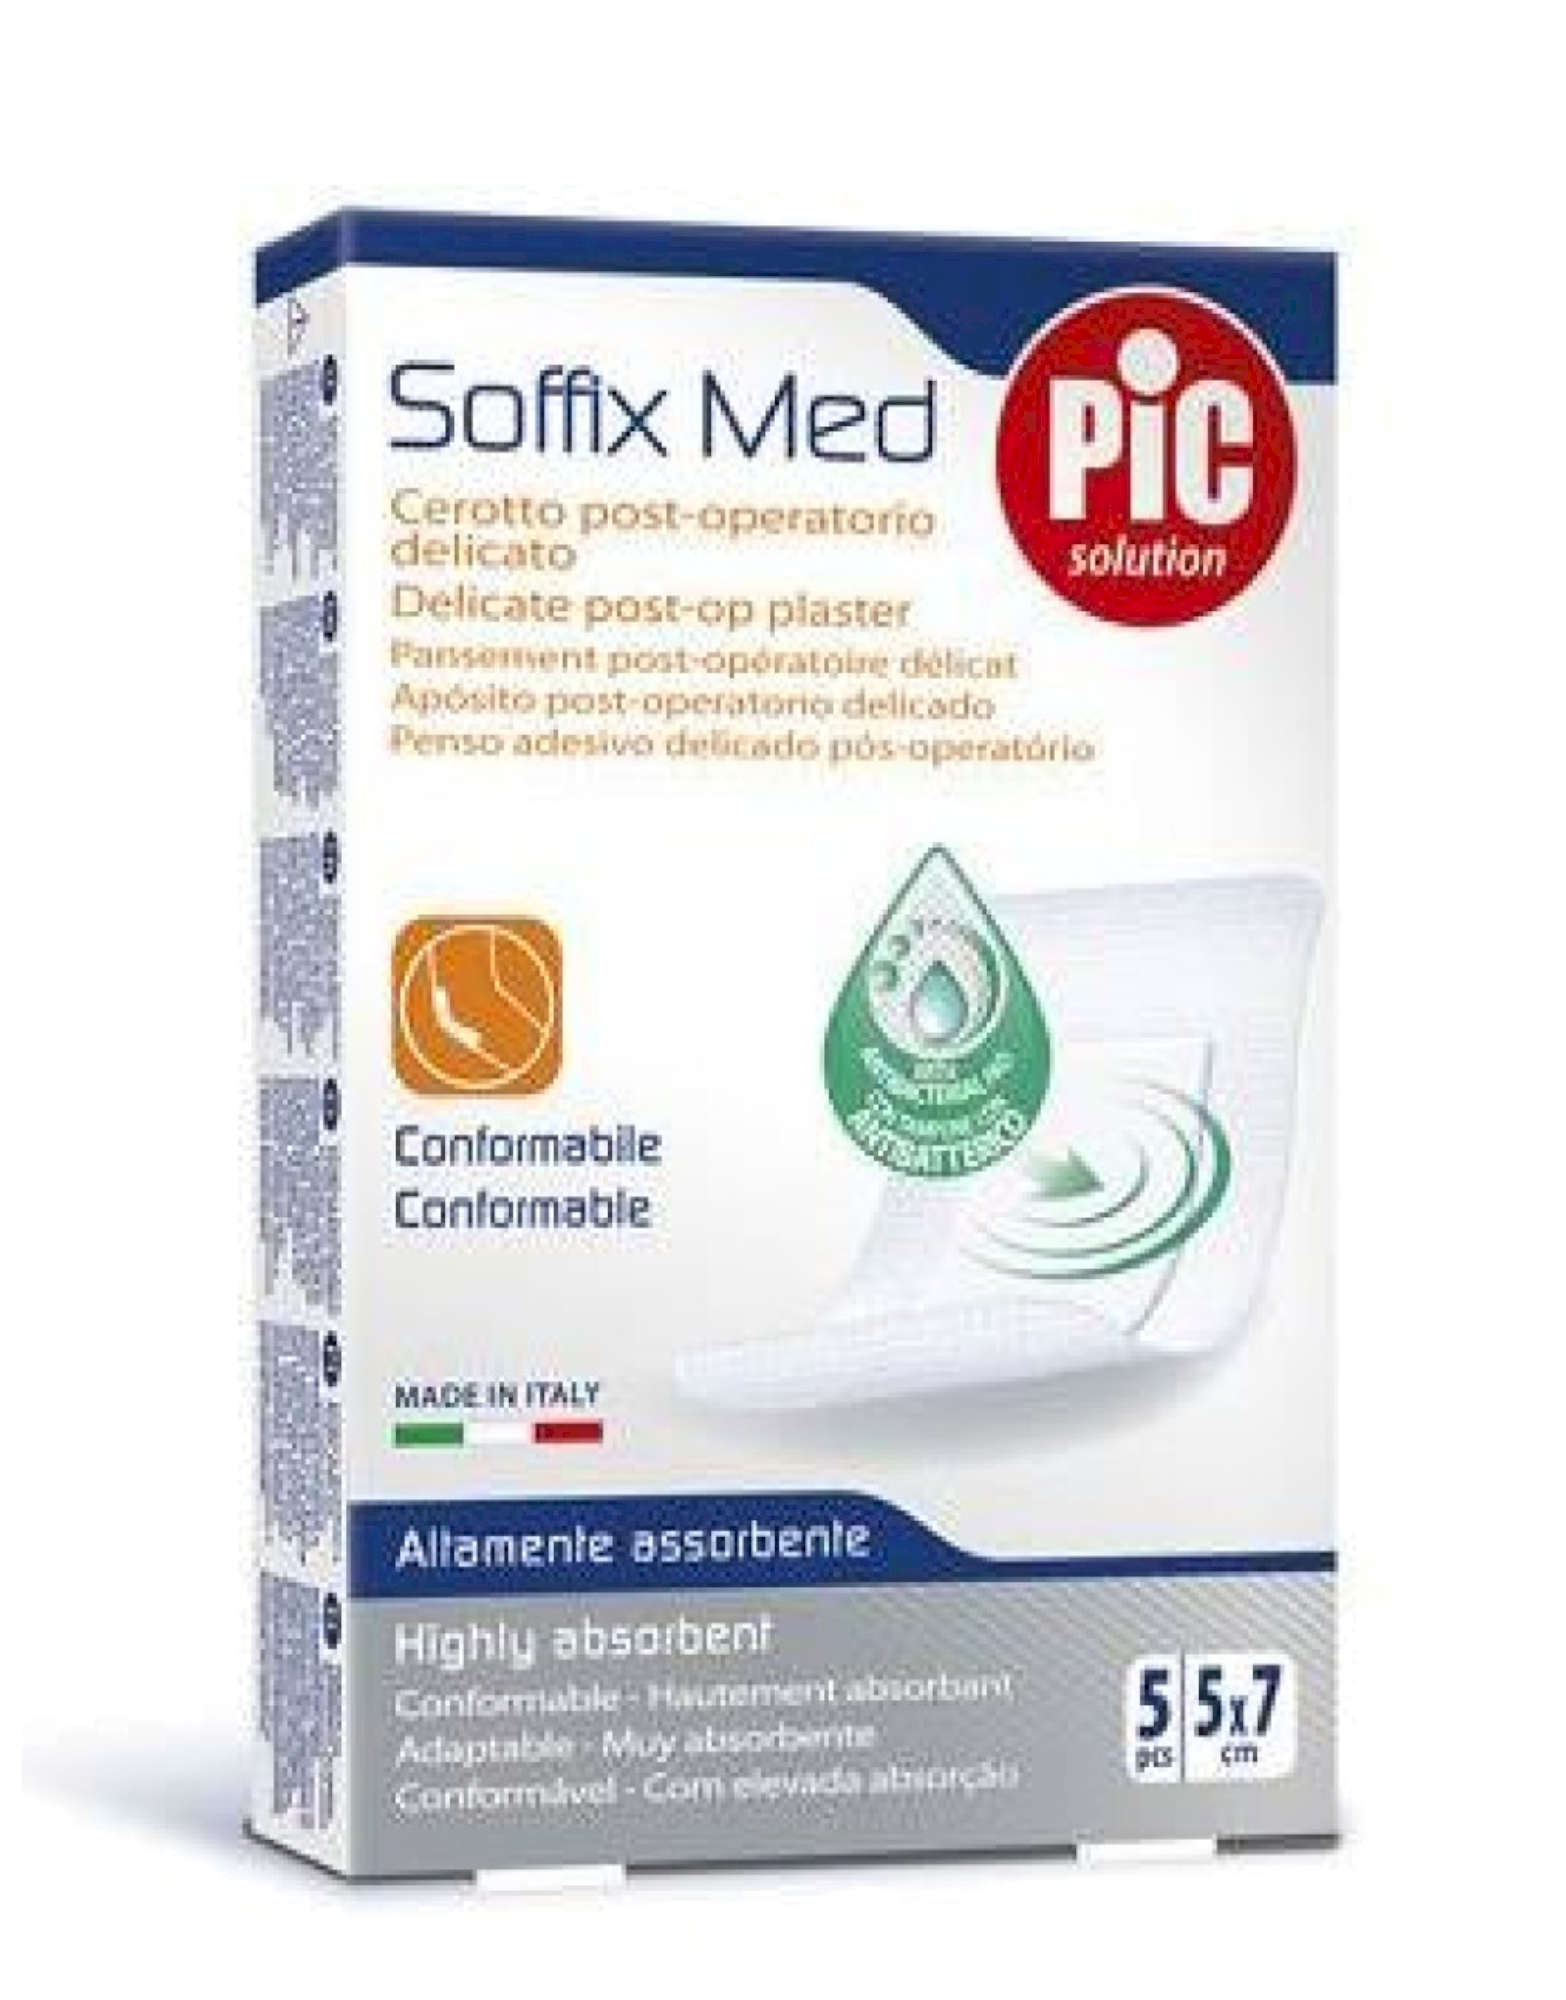 PIC Soffix Med Cerotto Post-Operatorio Delicato 5pcs 5x7cm